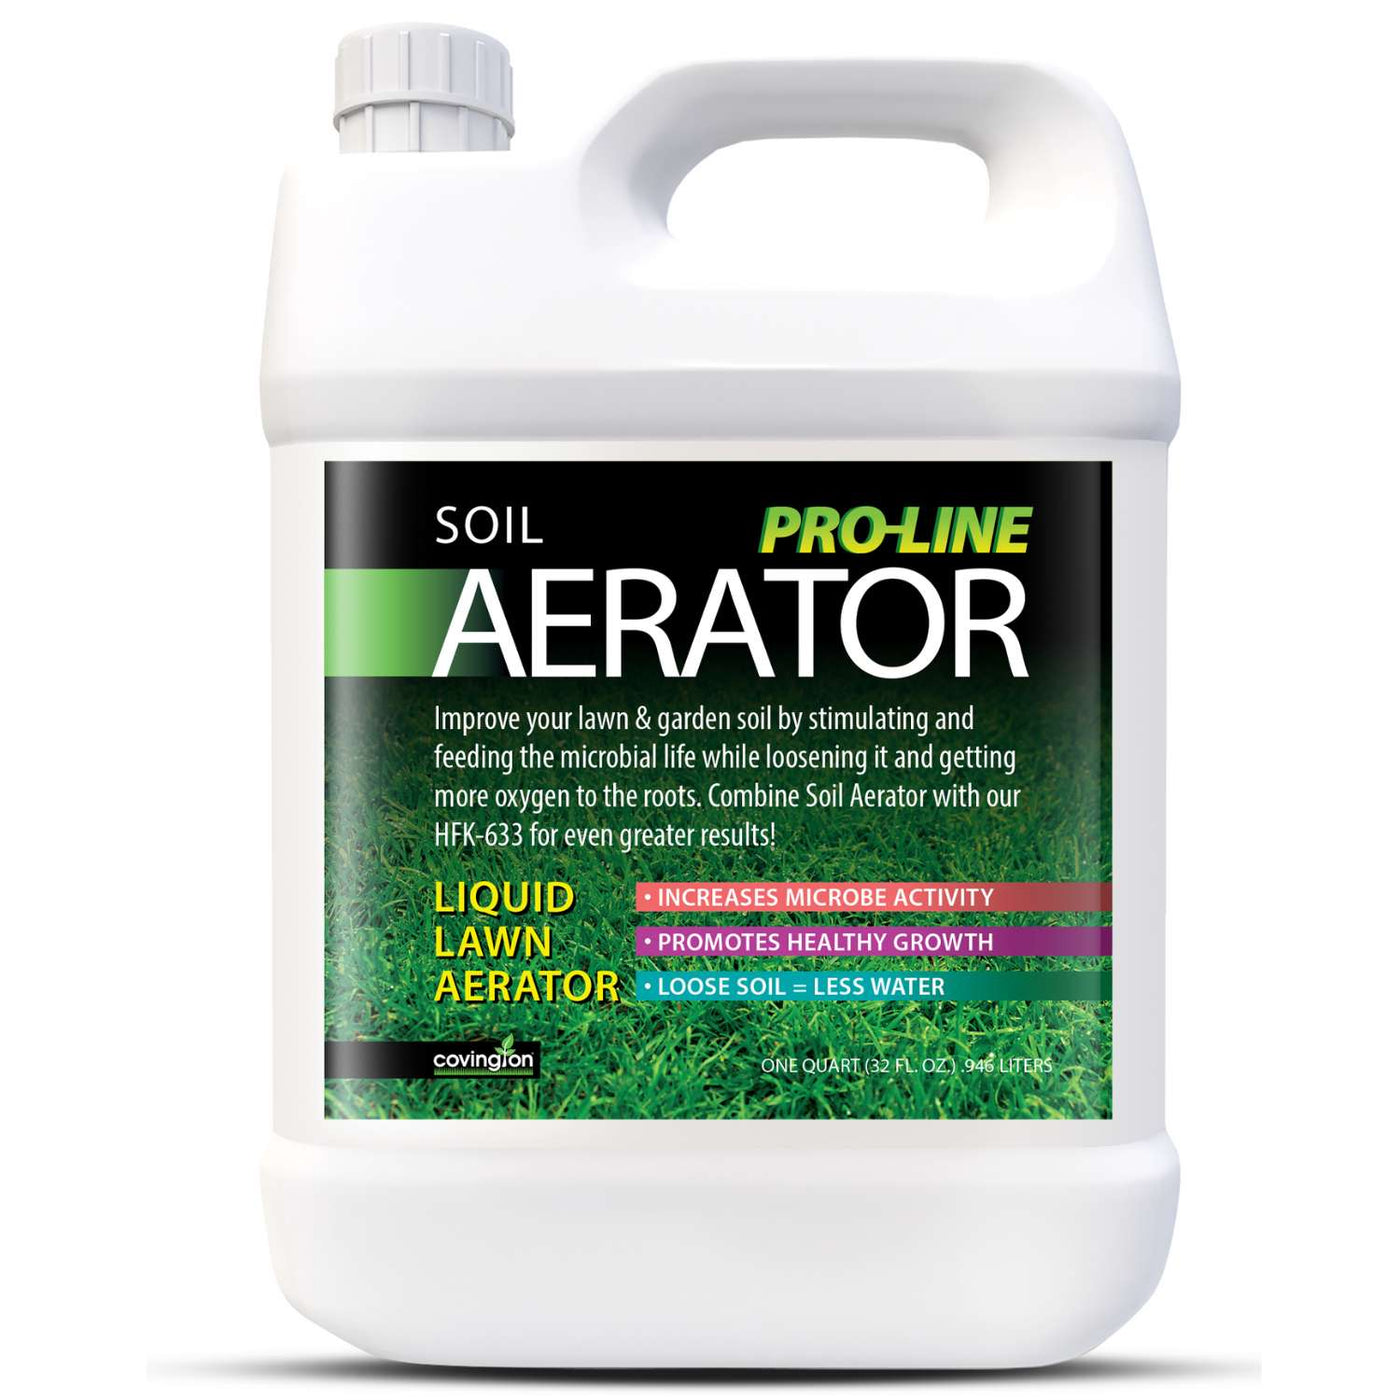 PRO-LINE Soil Aerator